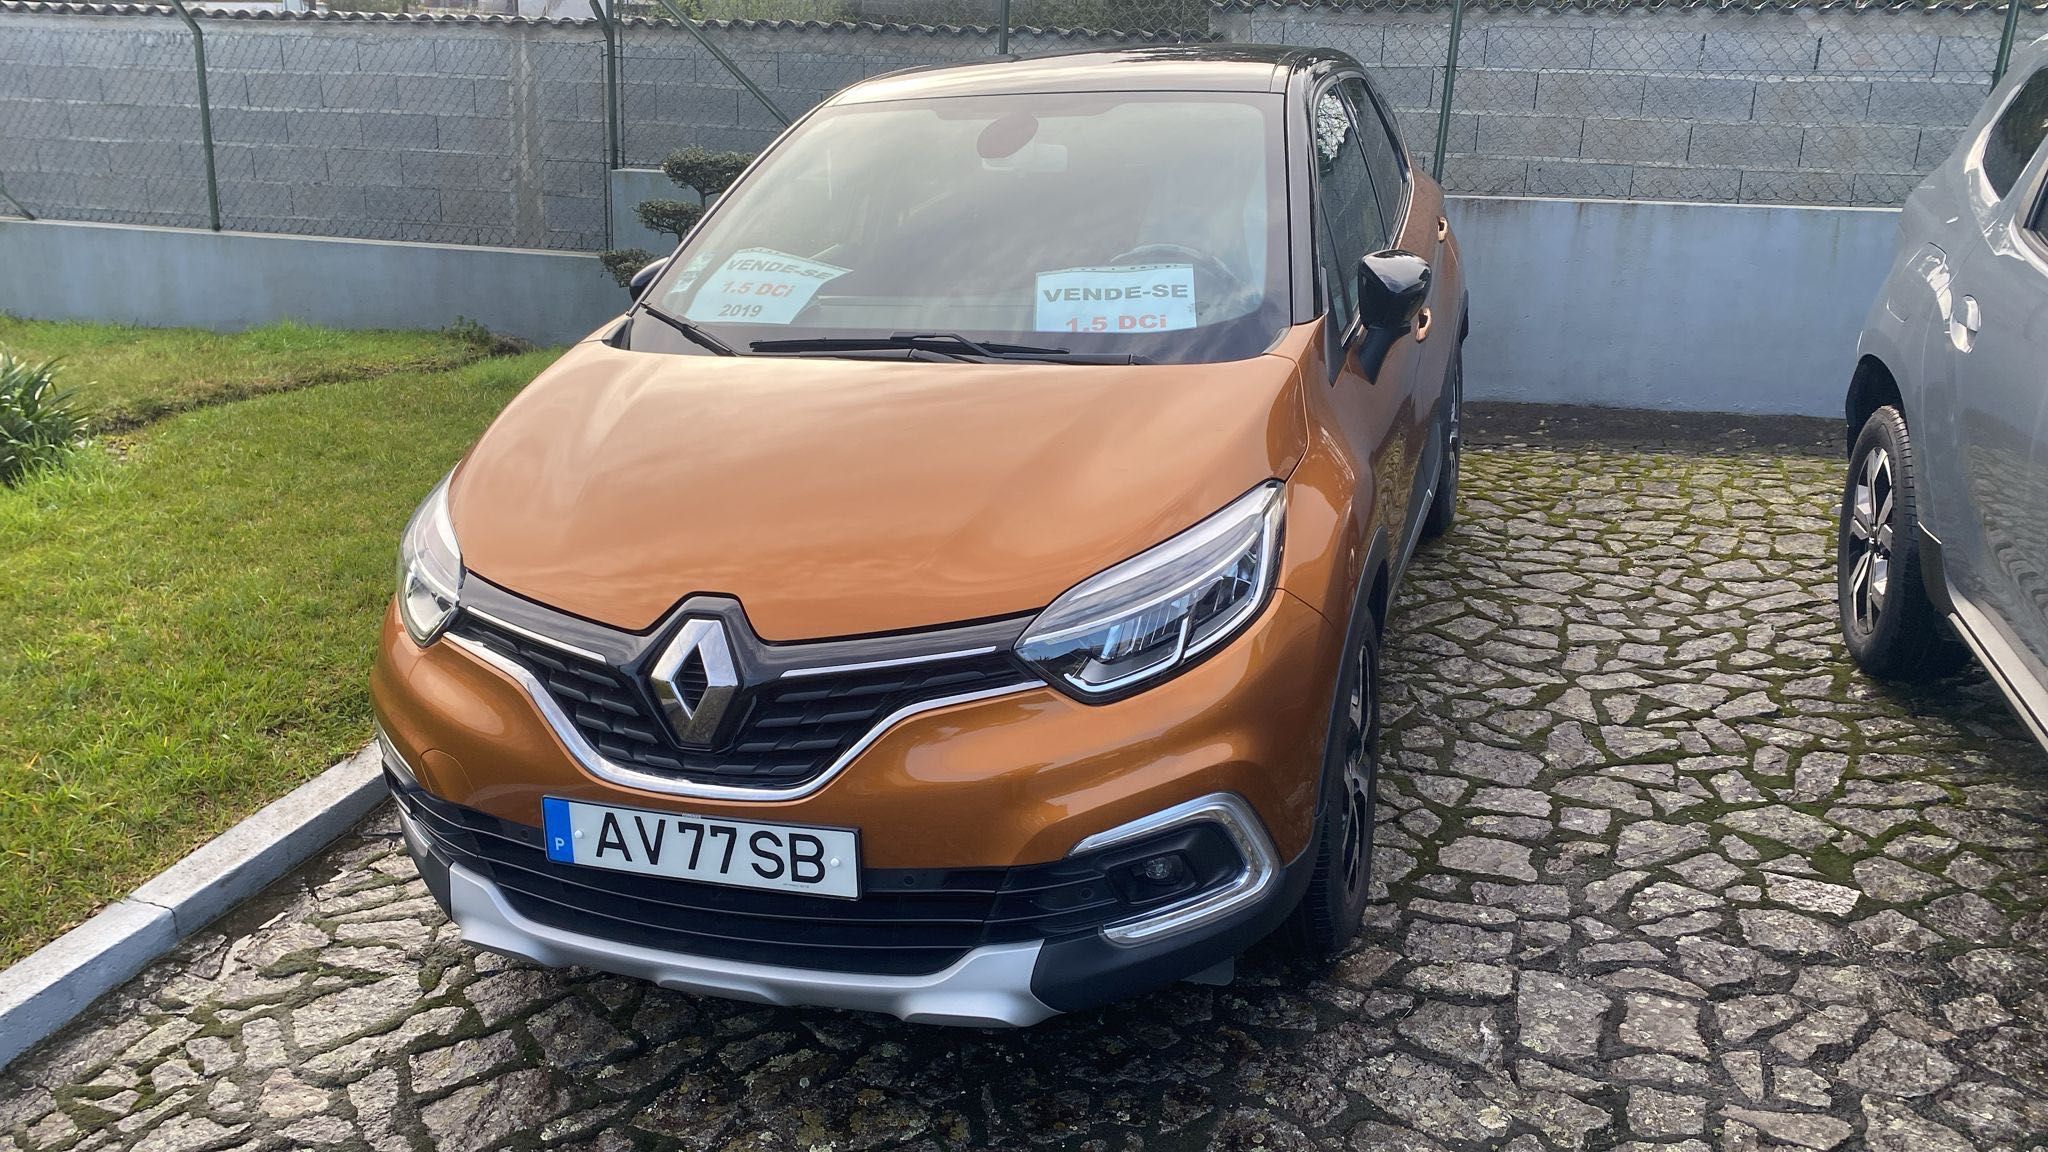 Renault captur 1.5dci